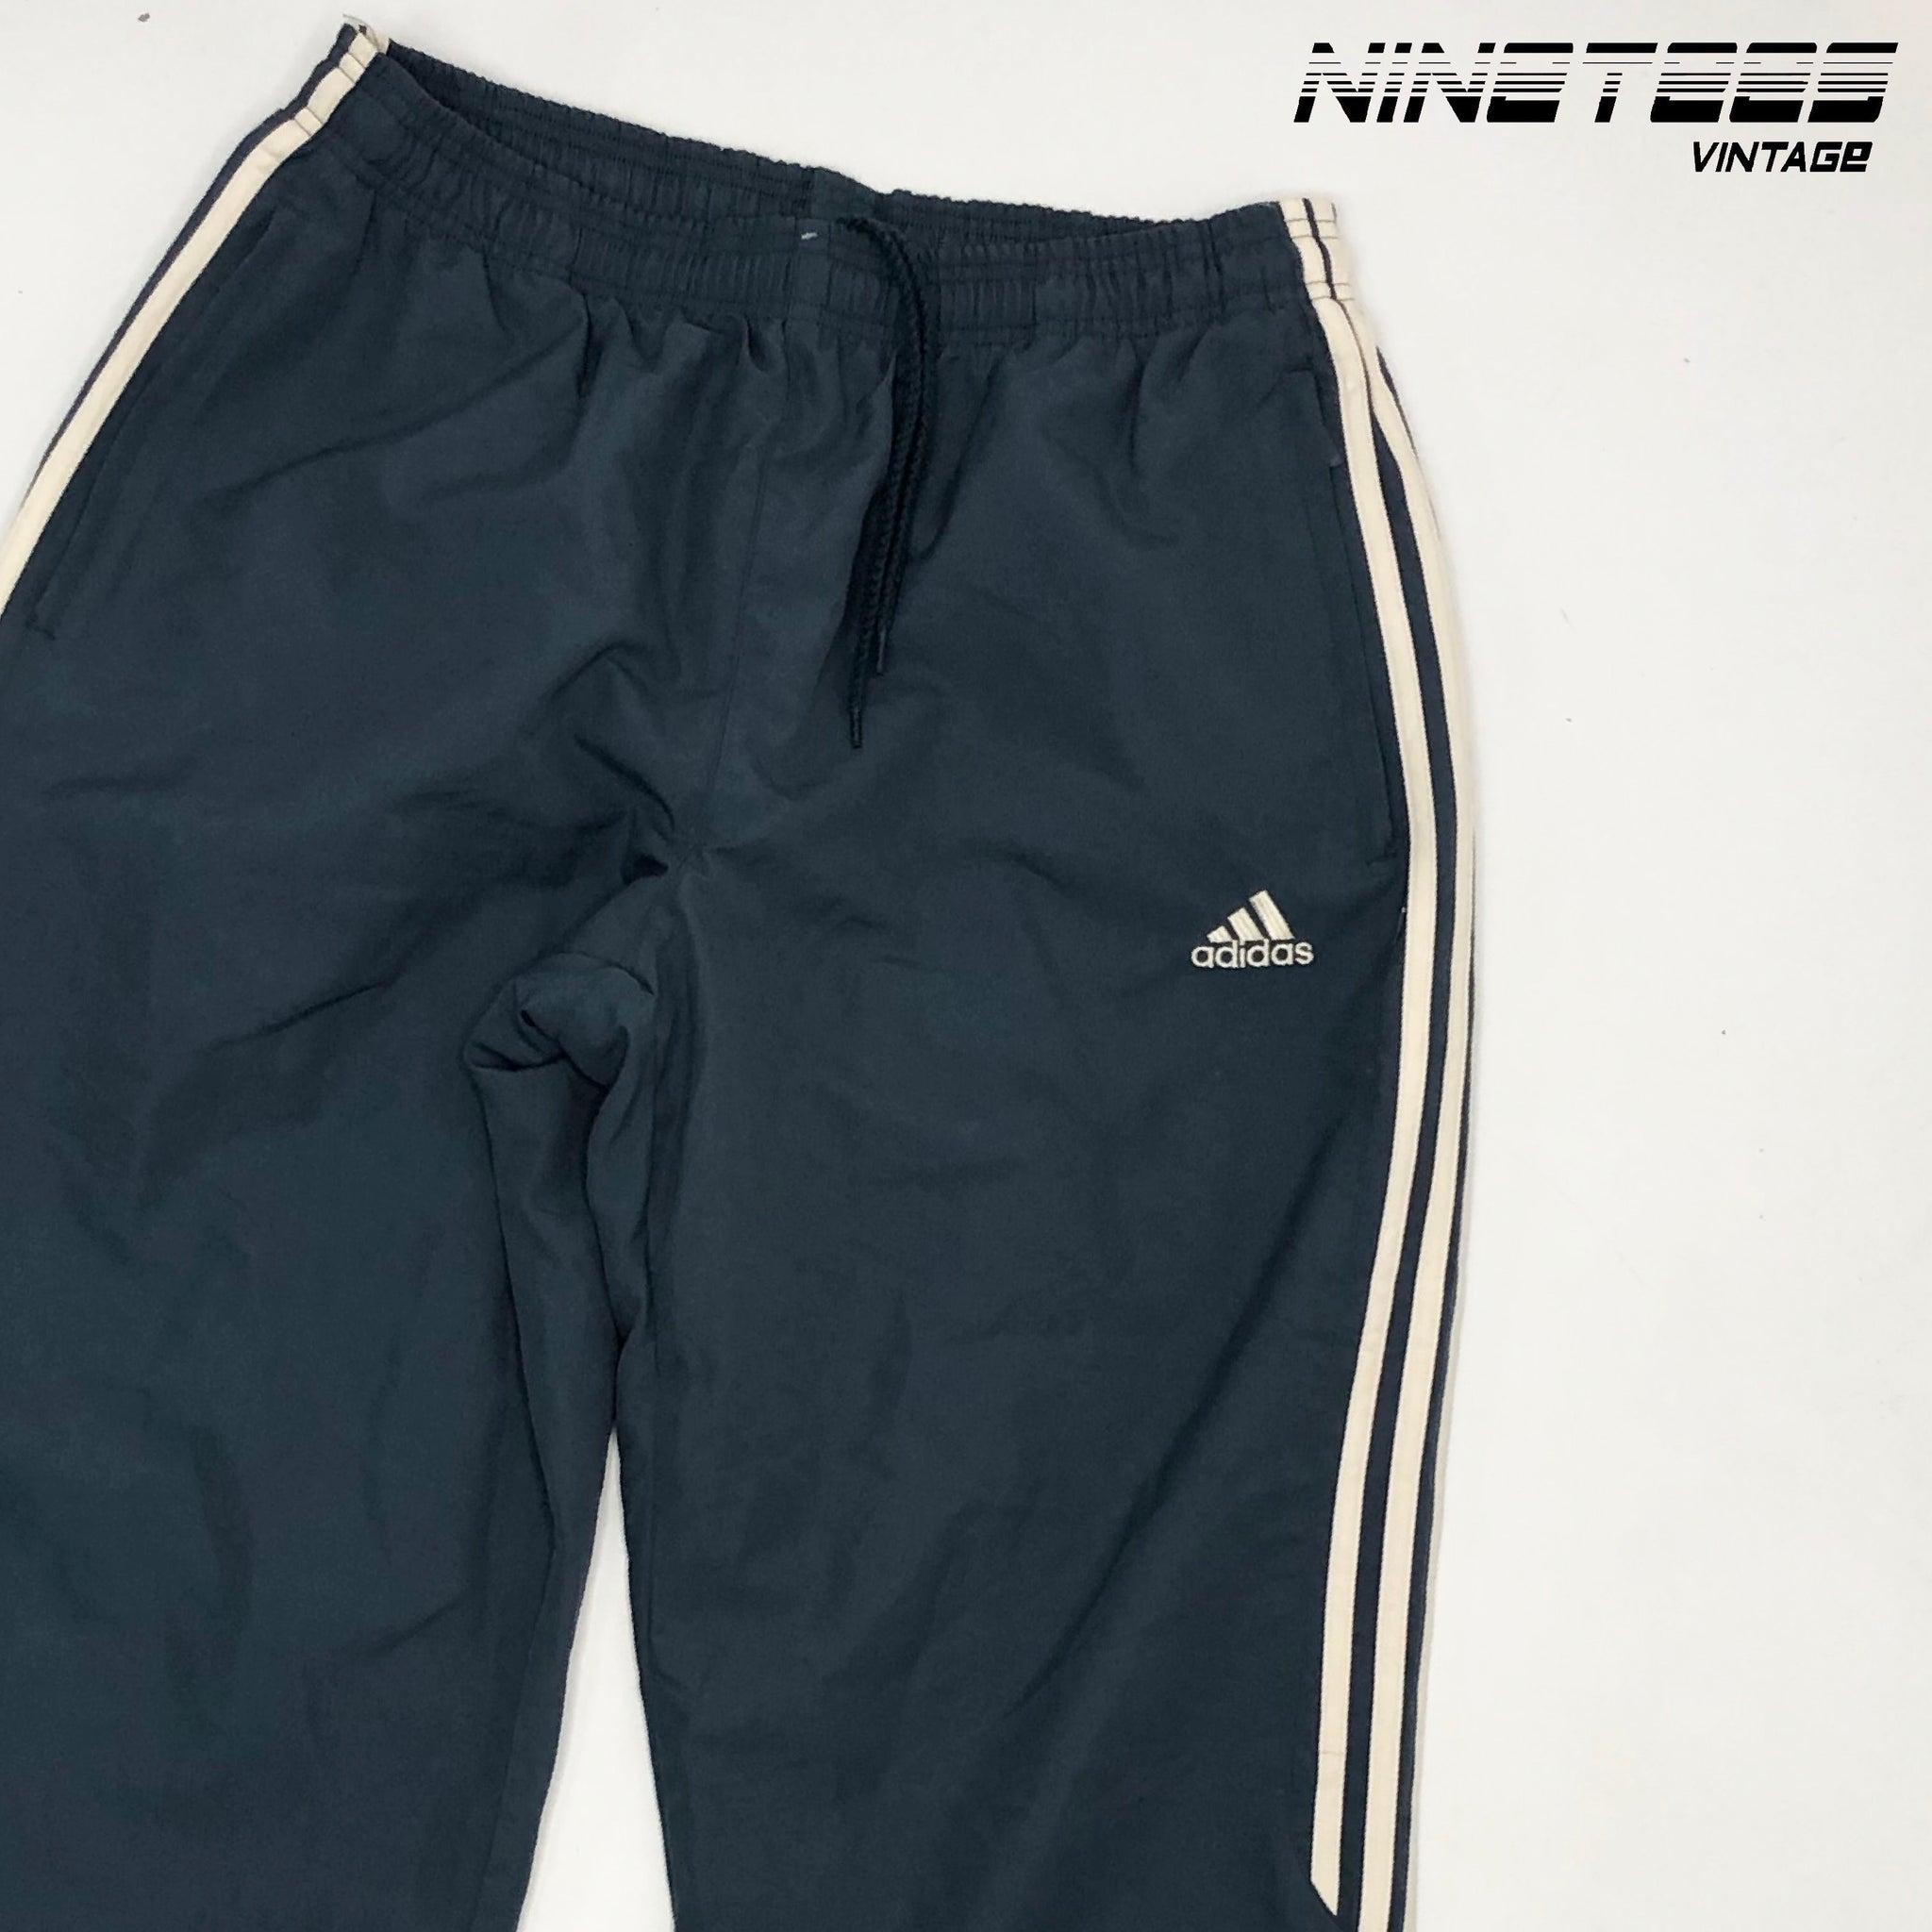 Adidas Tracksuit bottoms – NineTees Vintage